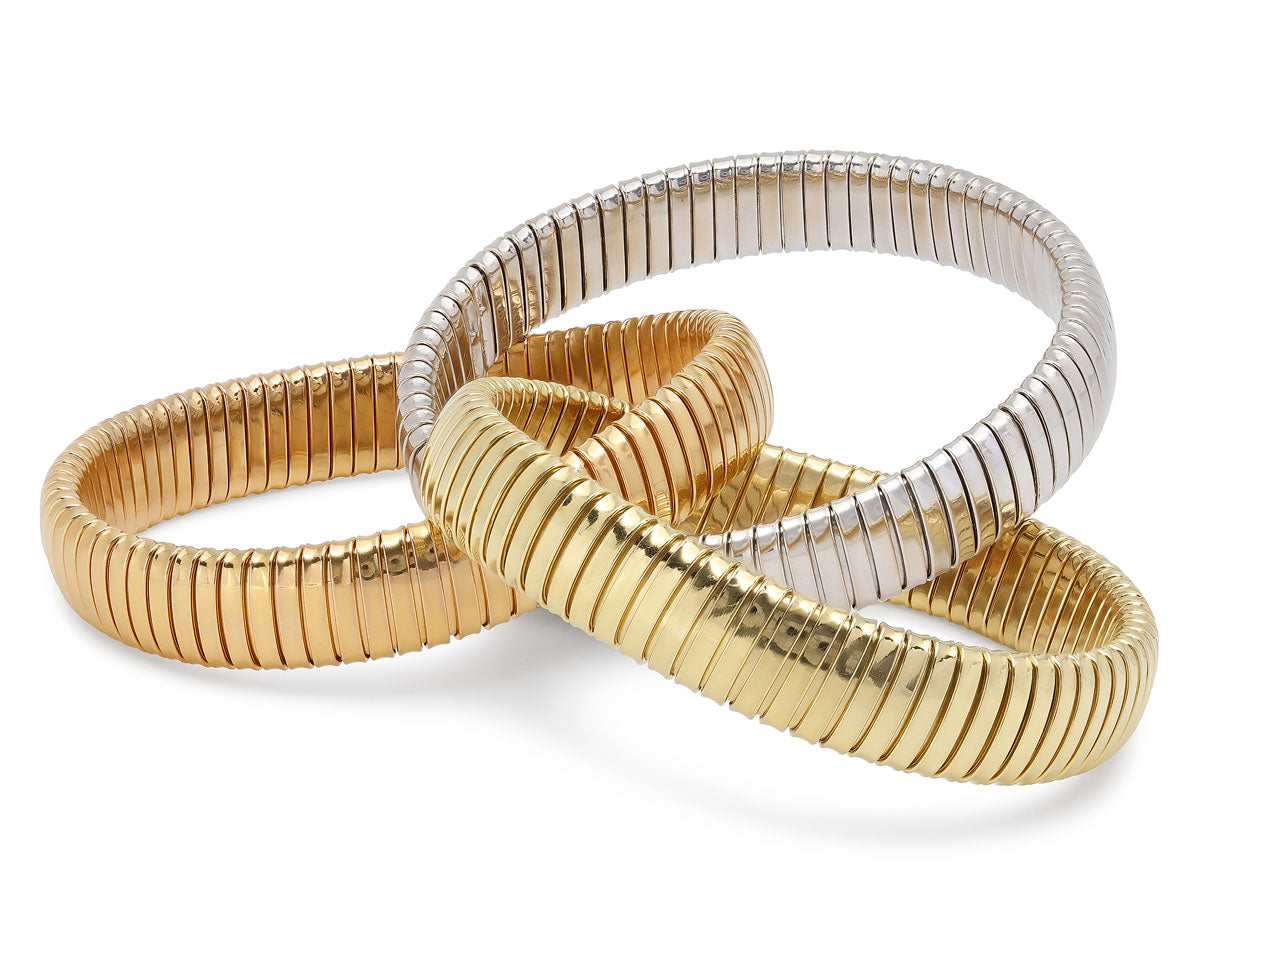 Sidney Garber Tri Gold Rolling Bracelet in 18K Gold, 12 mm